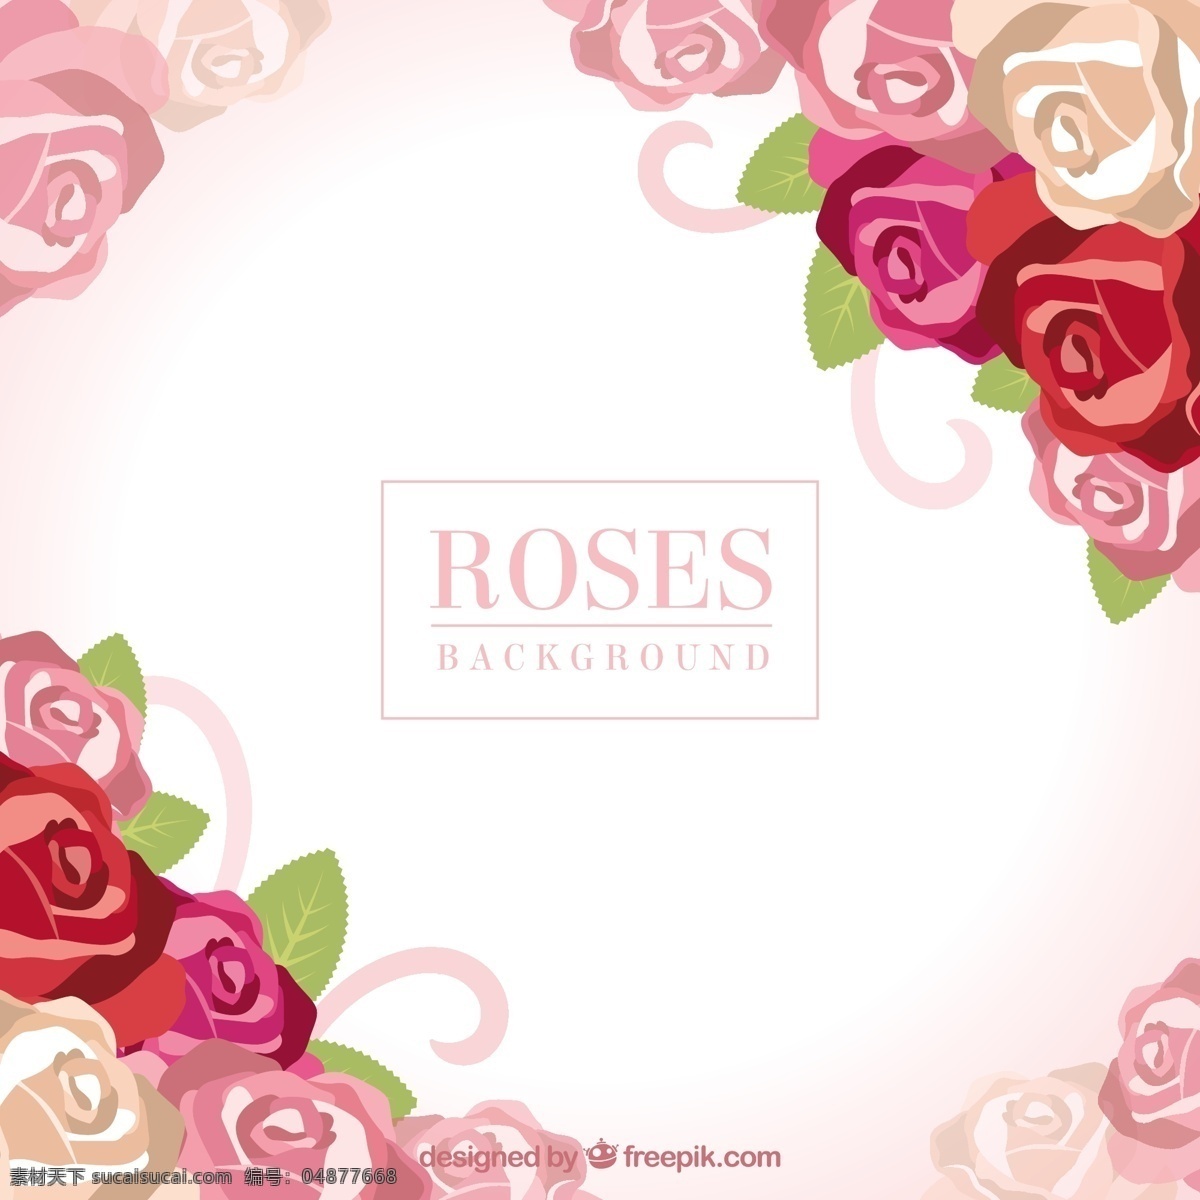 可爱 背景 色 玫瑰 花卉 自然 花卉背景 春天 颜色 平板 植物 丰富多彩 平面设计 自然背景 装饰